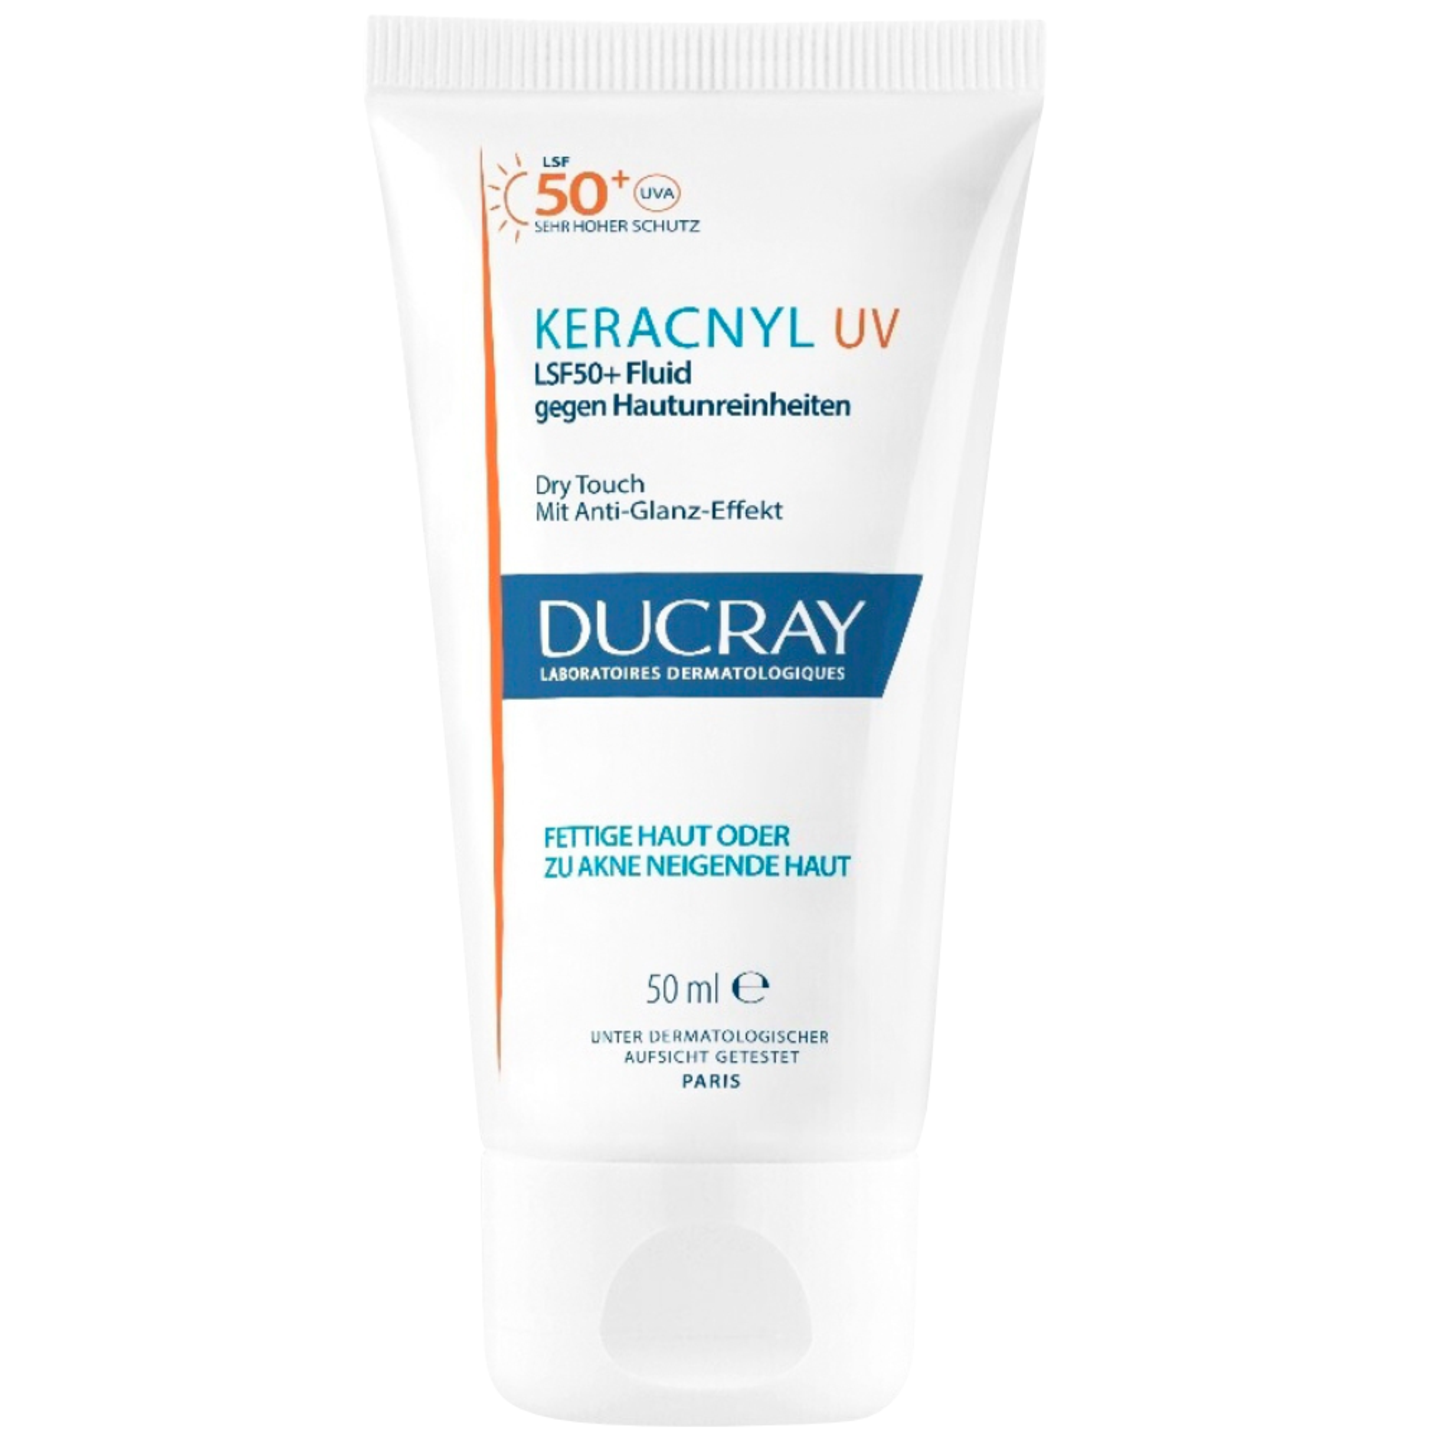 Grundlage: "Keracnyl UV LSF 50+ Fluid gegen Hautunreinheiten“ von Ducray, ungefähr 23 Euro.